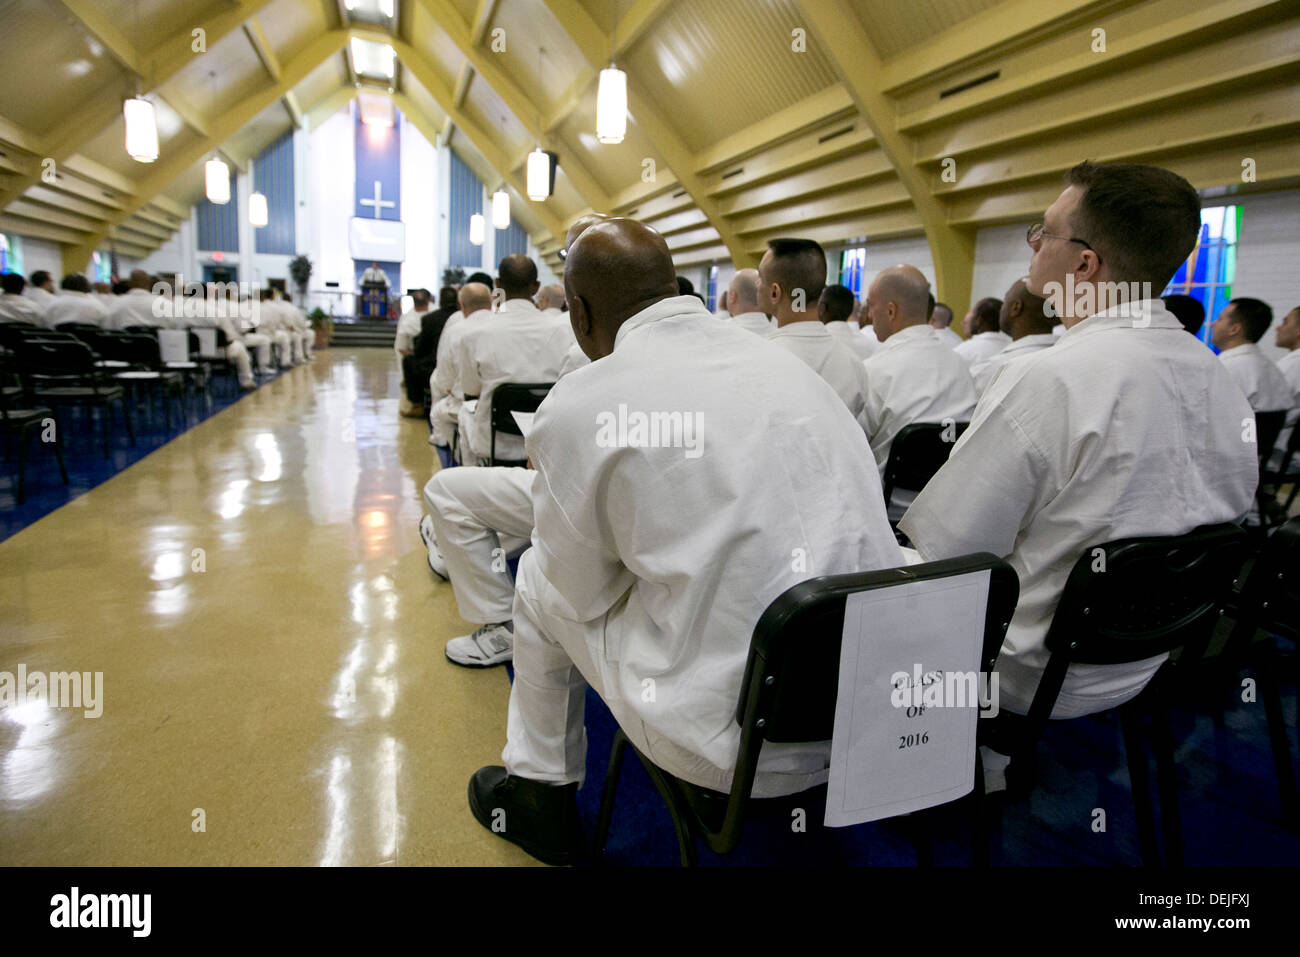 Priez pour les détenus, chanter et écouter lors de conférences à la cérémonie de collation de prison à sécurité maximale près de Houston, Texas Banque D'Images